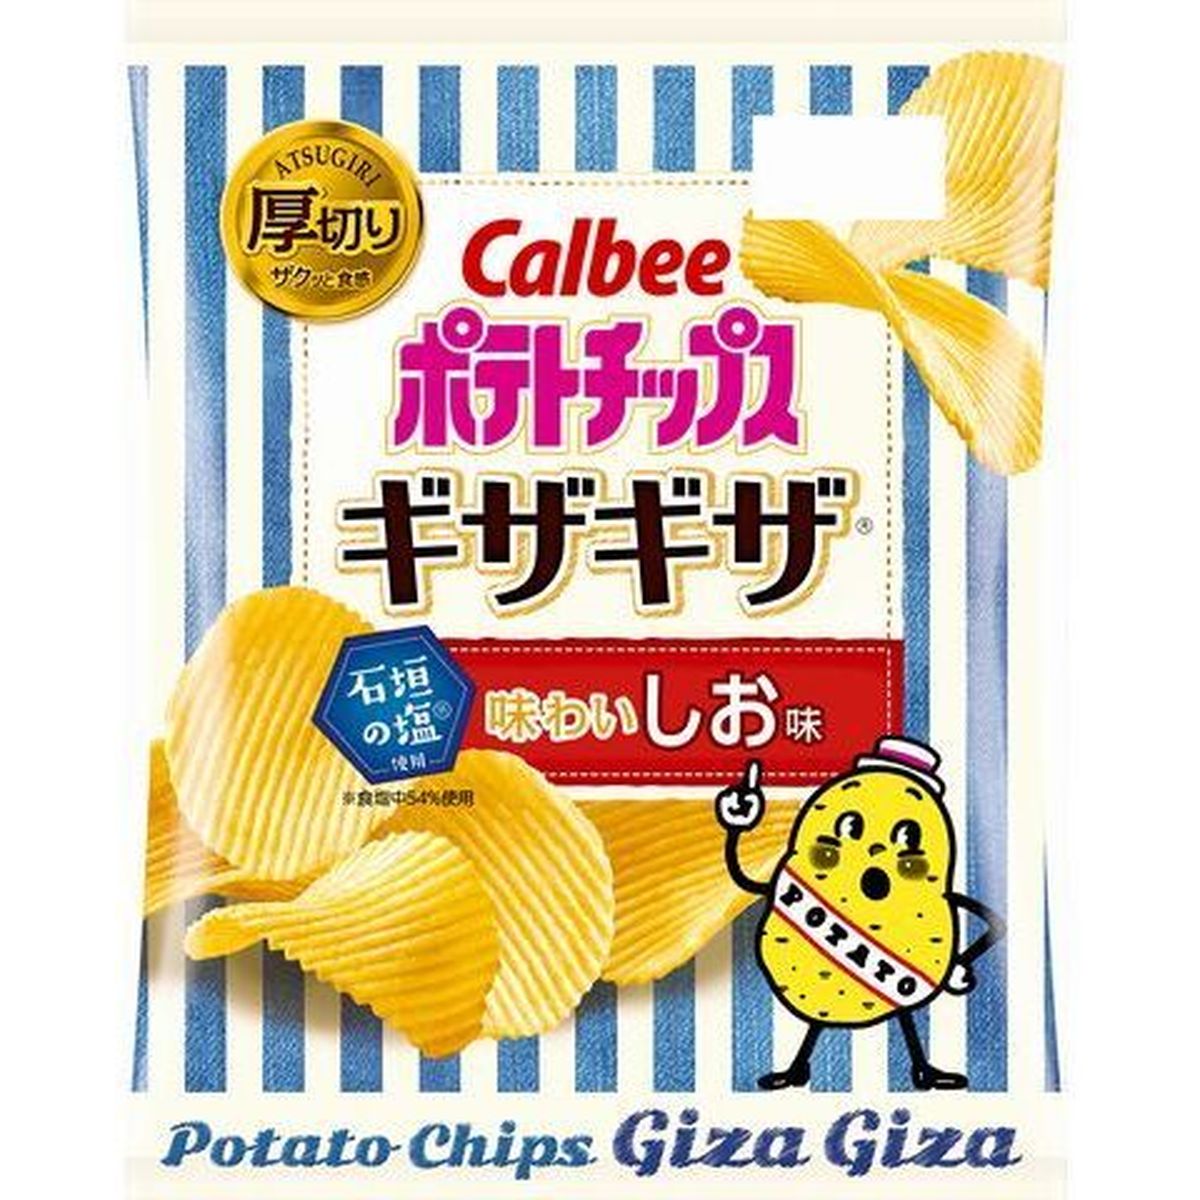 【12個入リ】カルビー ポテトチップス ギザギザ味ワイシオ味 60g